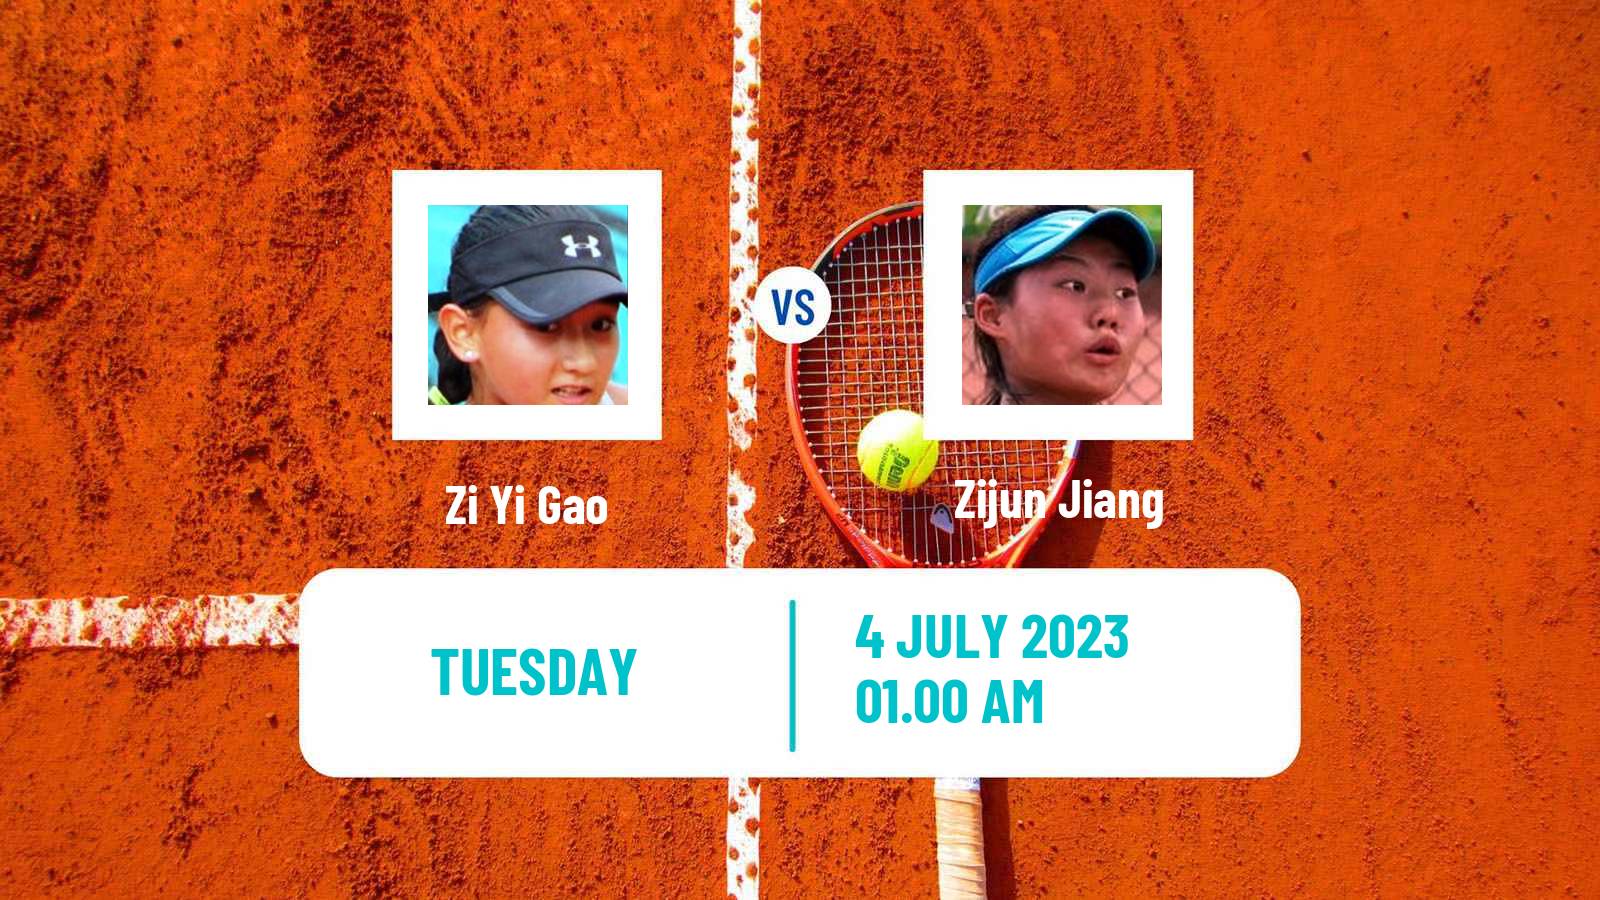 Tennis ITF W15 Tianjin 4 Women Zi Yi Gao - Zijun Jiang